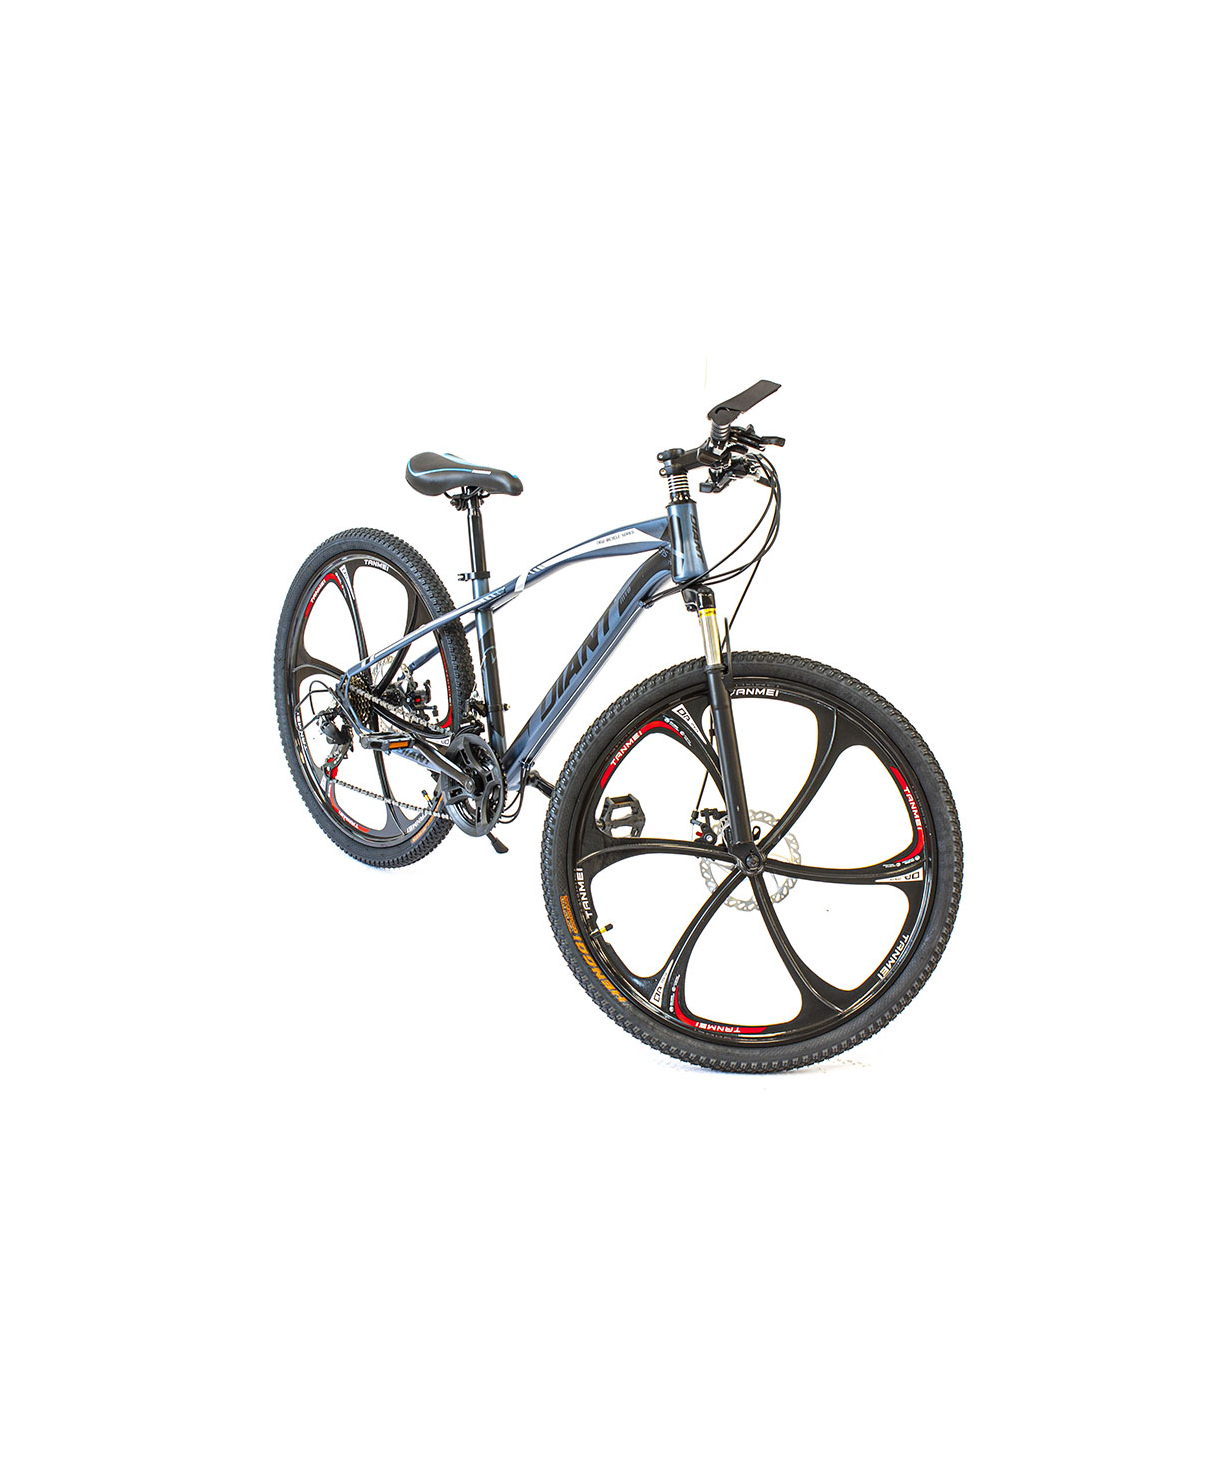 Հեծանիվ Diant01 G15 26